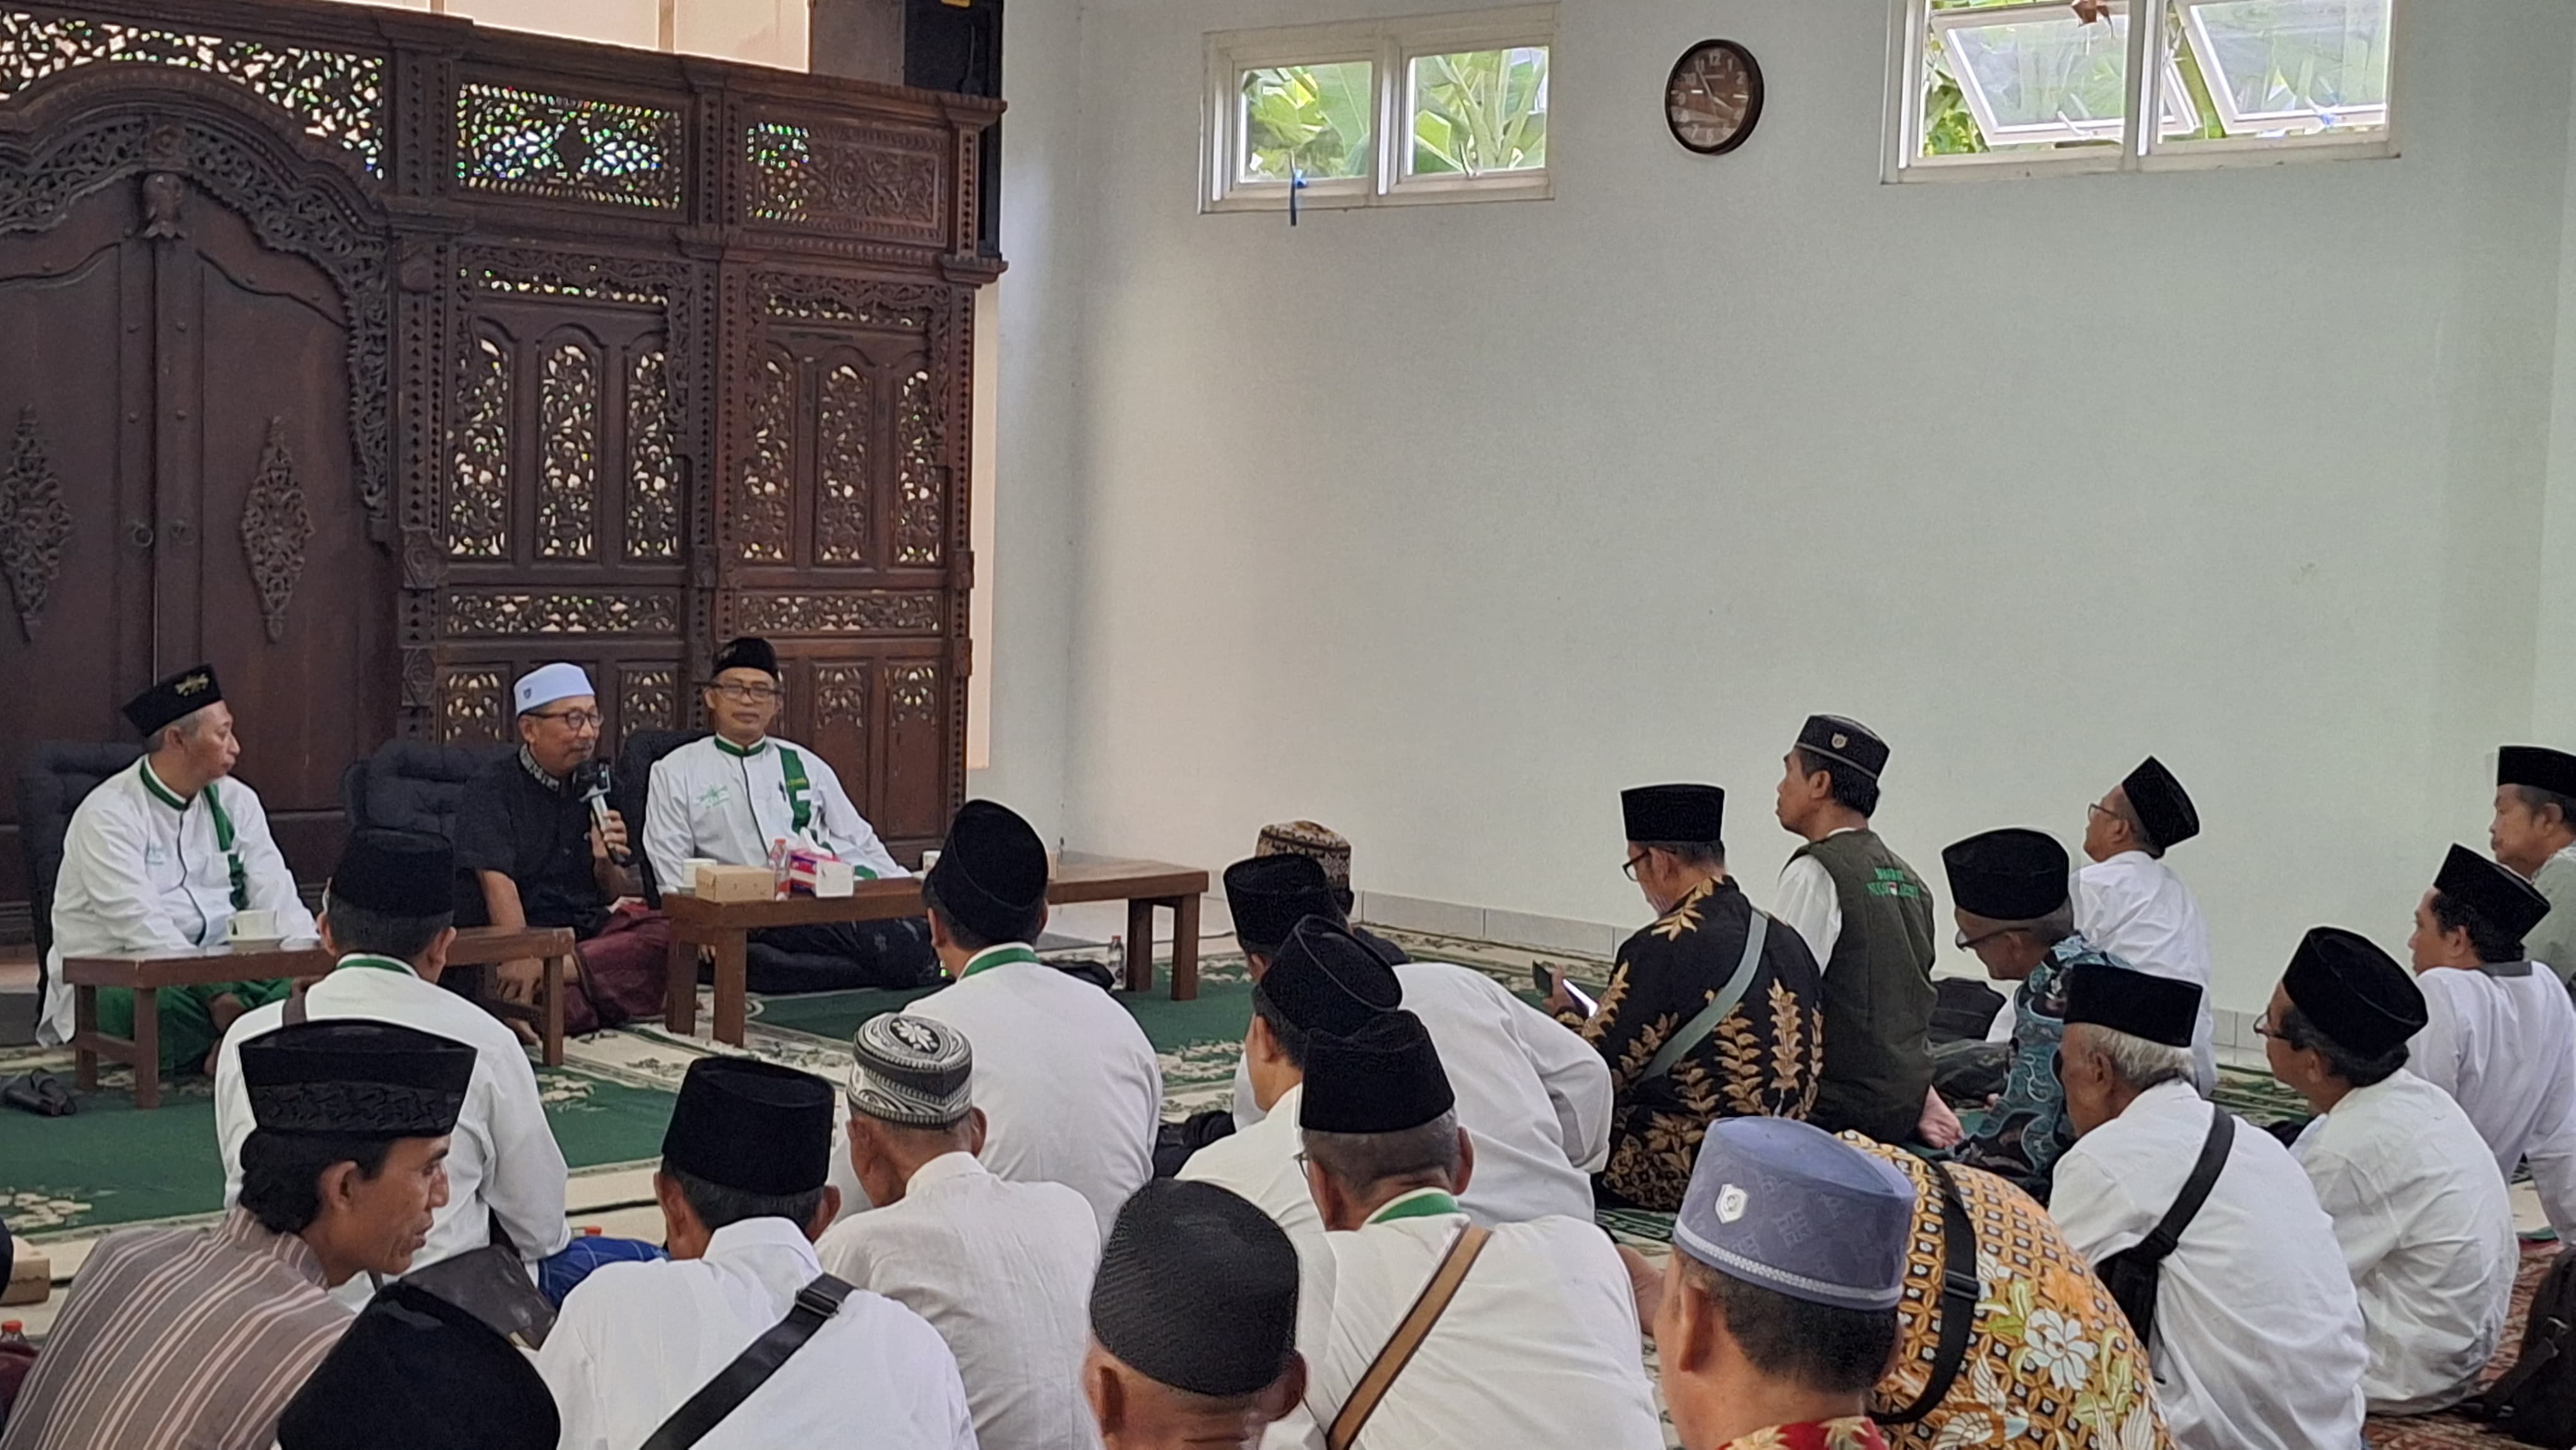 Pengurus NU Kecamatan Sukodono Sidoarjo Jalin Silaturahim di Pesantren Al-Hikam Malang